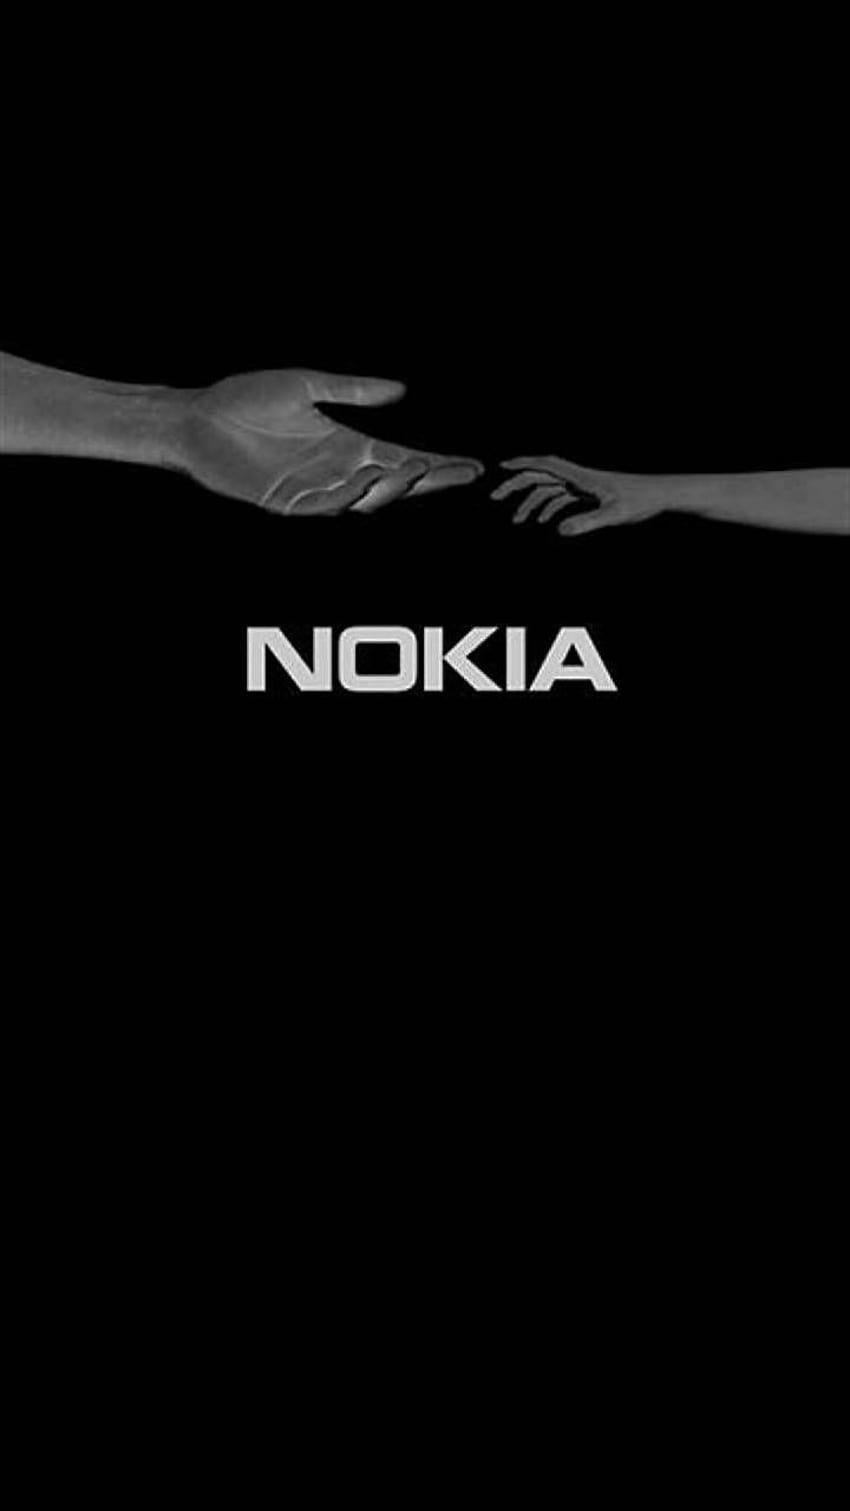 Nokia 3310: Bạn còn nhớ chiếc điện thoại Nokia 3310 mà một thời làm mưa làm gió trên thị trường? Hãy xem hình ảnh liên quan để nhớ lại một thời tràn đầy kỷ niệm với chiếc điện thoại đượm nắng này.